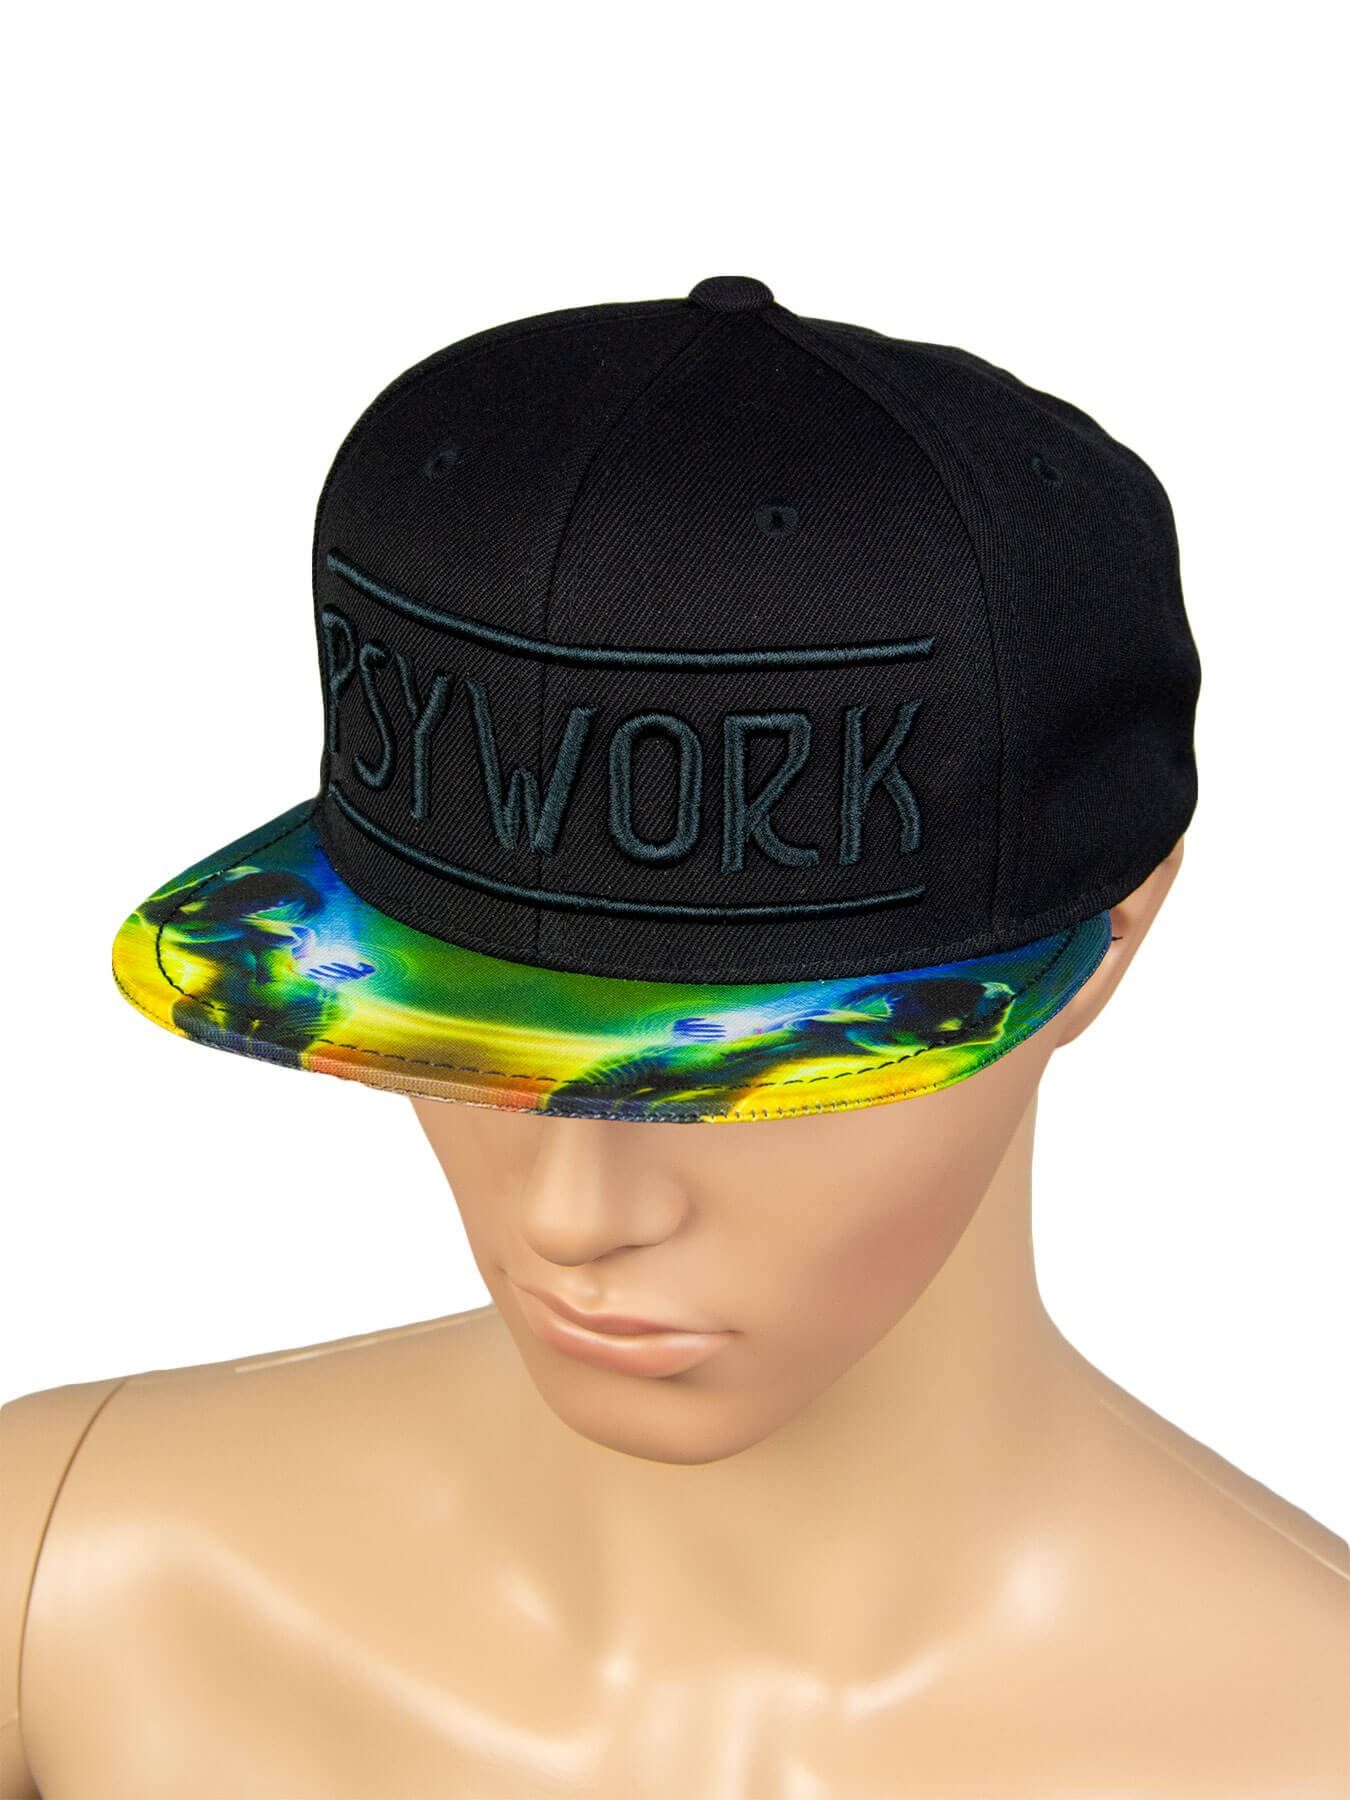 PSYWORK Schwarzlicht "Prismatic", Schwarz Black Cap UV-aktiv, unter leuchtet Neon Schwarzlicht Cap Snapback